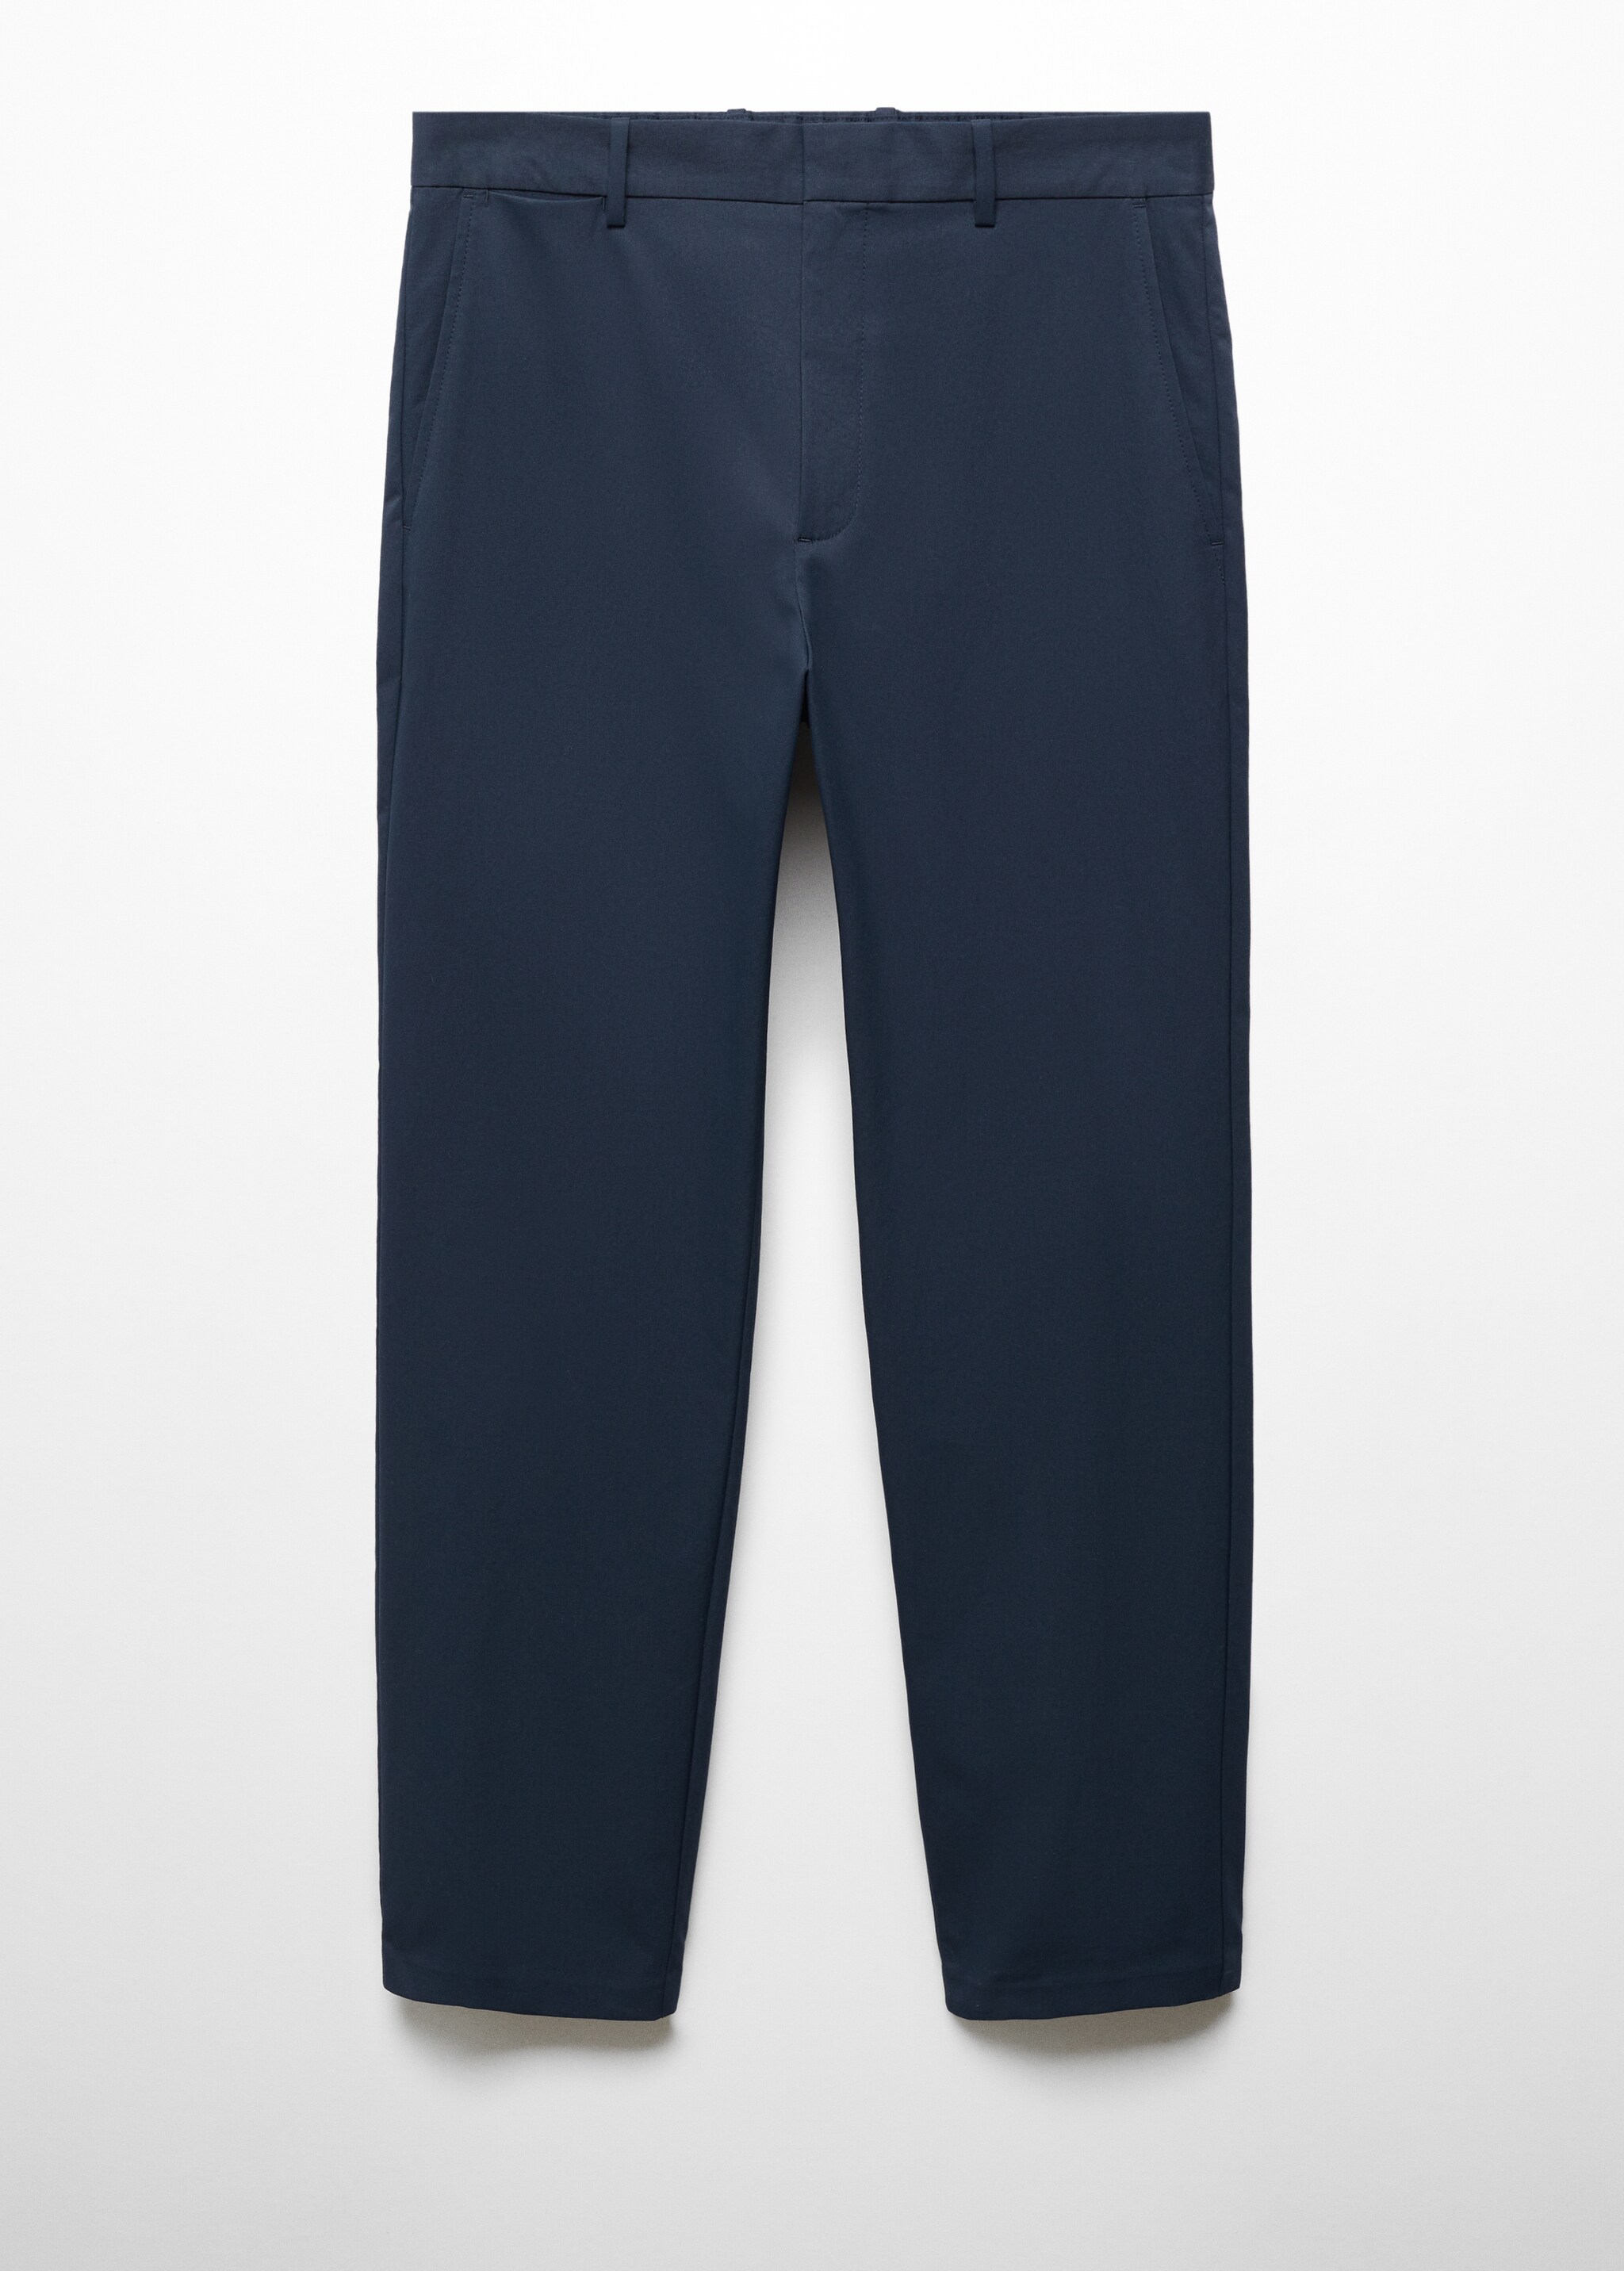 Pantalón slim fit tejido técnico - Artículo sin modelo